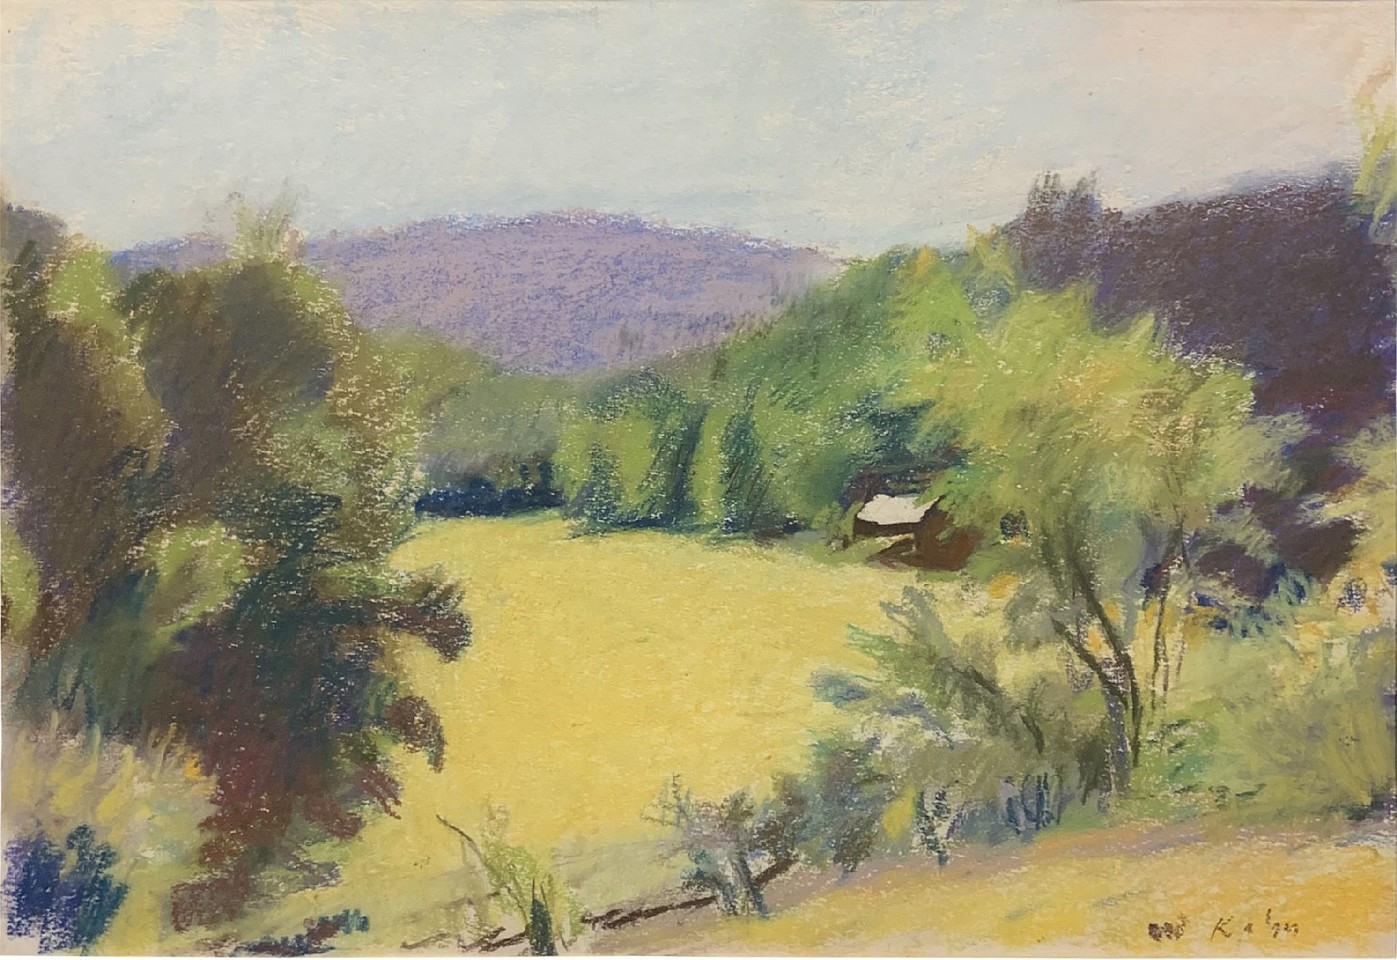 Wolf Kahn, Untitled (Landscape)
pastel on paper, 11 1/2 x 17 in. (29.2 x 43.2 cm)
WK230202